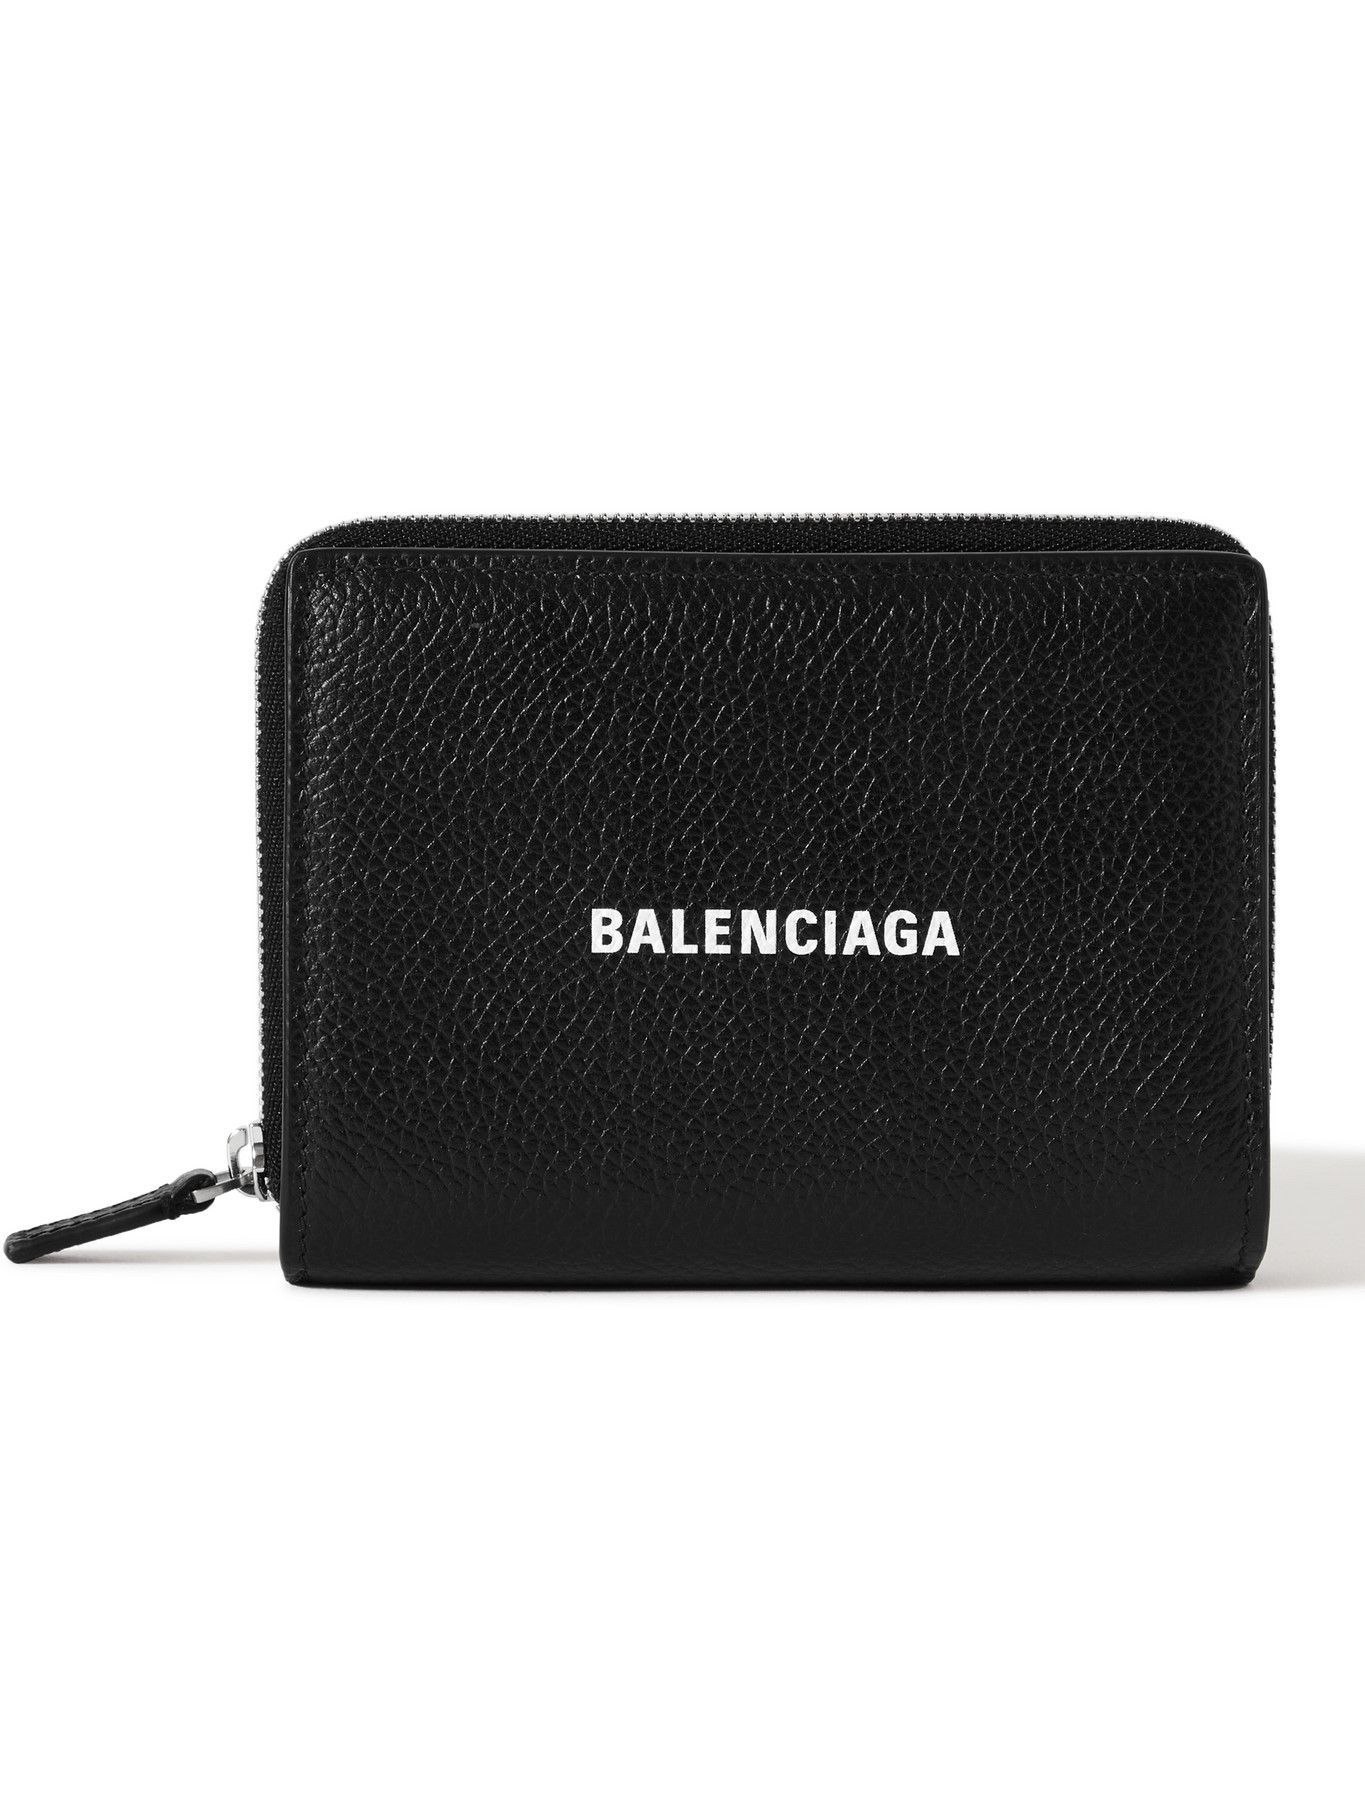 Balenciaga - Logo-Print Full-Grain Leather Zip-Around Wallet Balenciaga